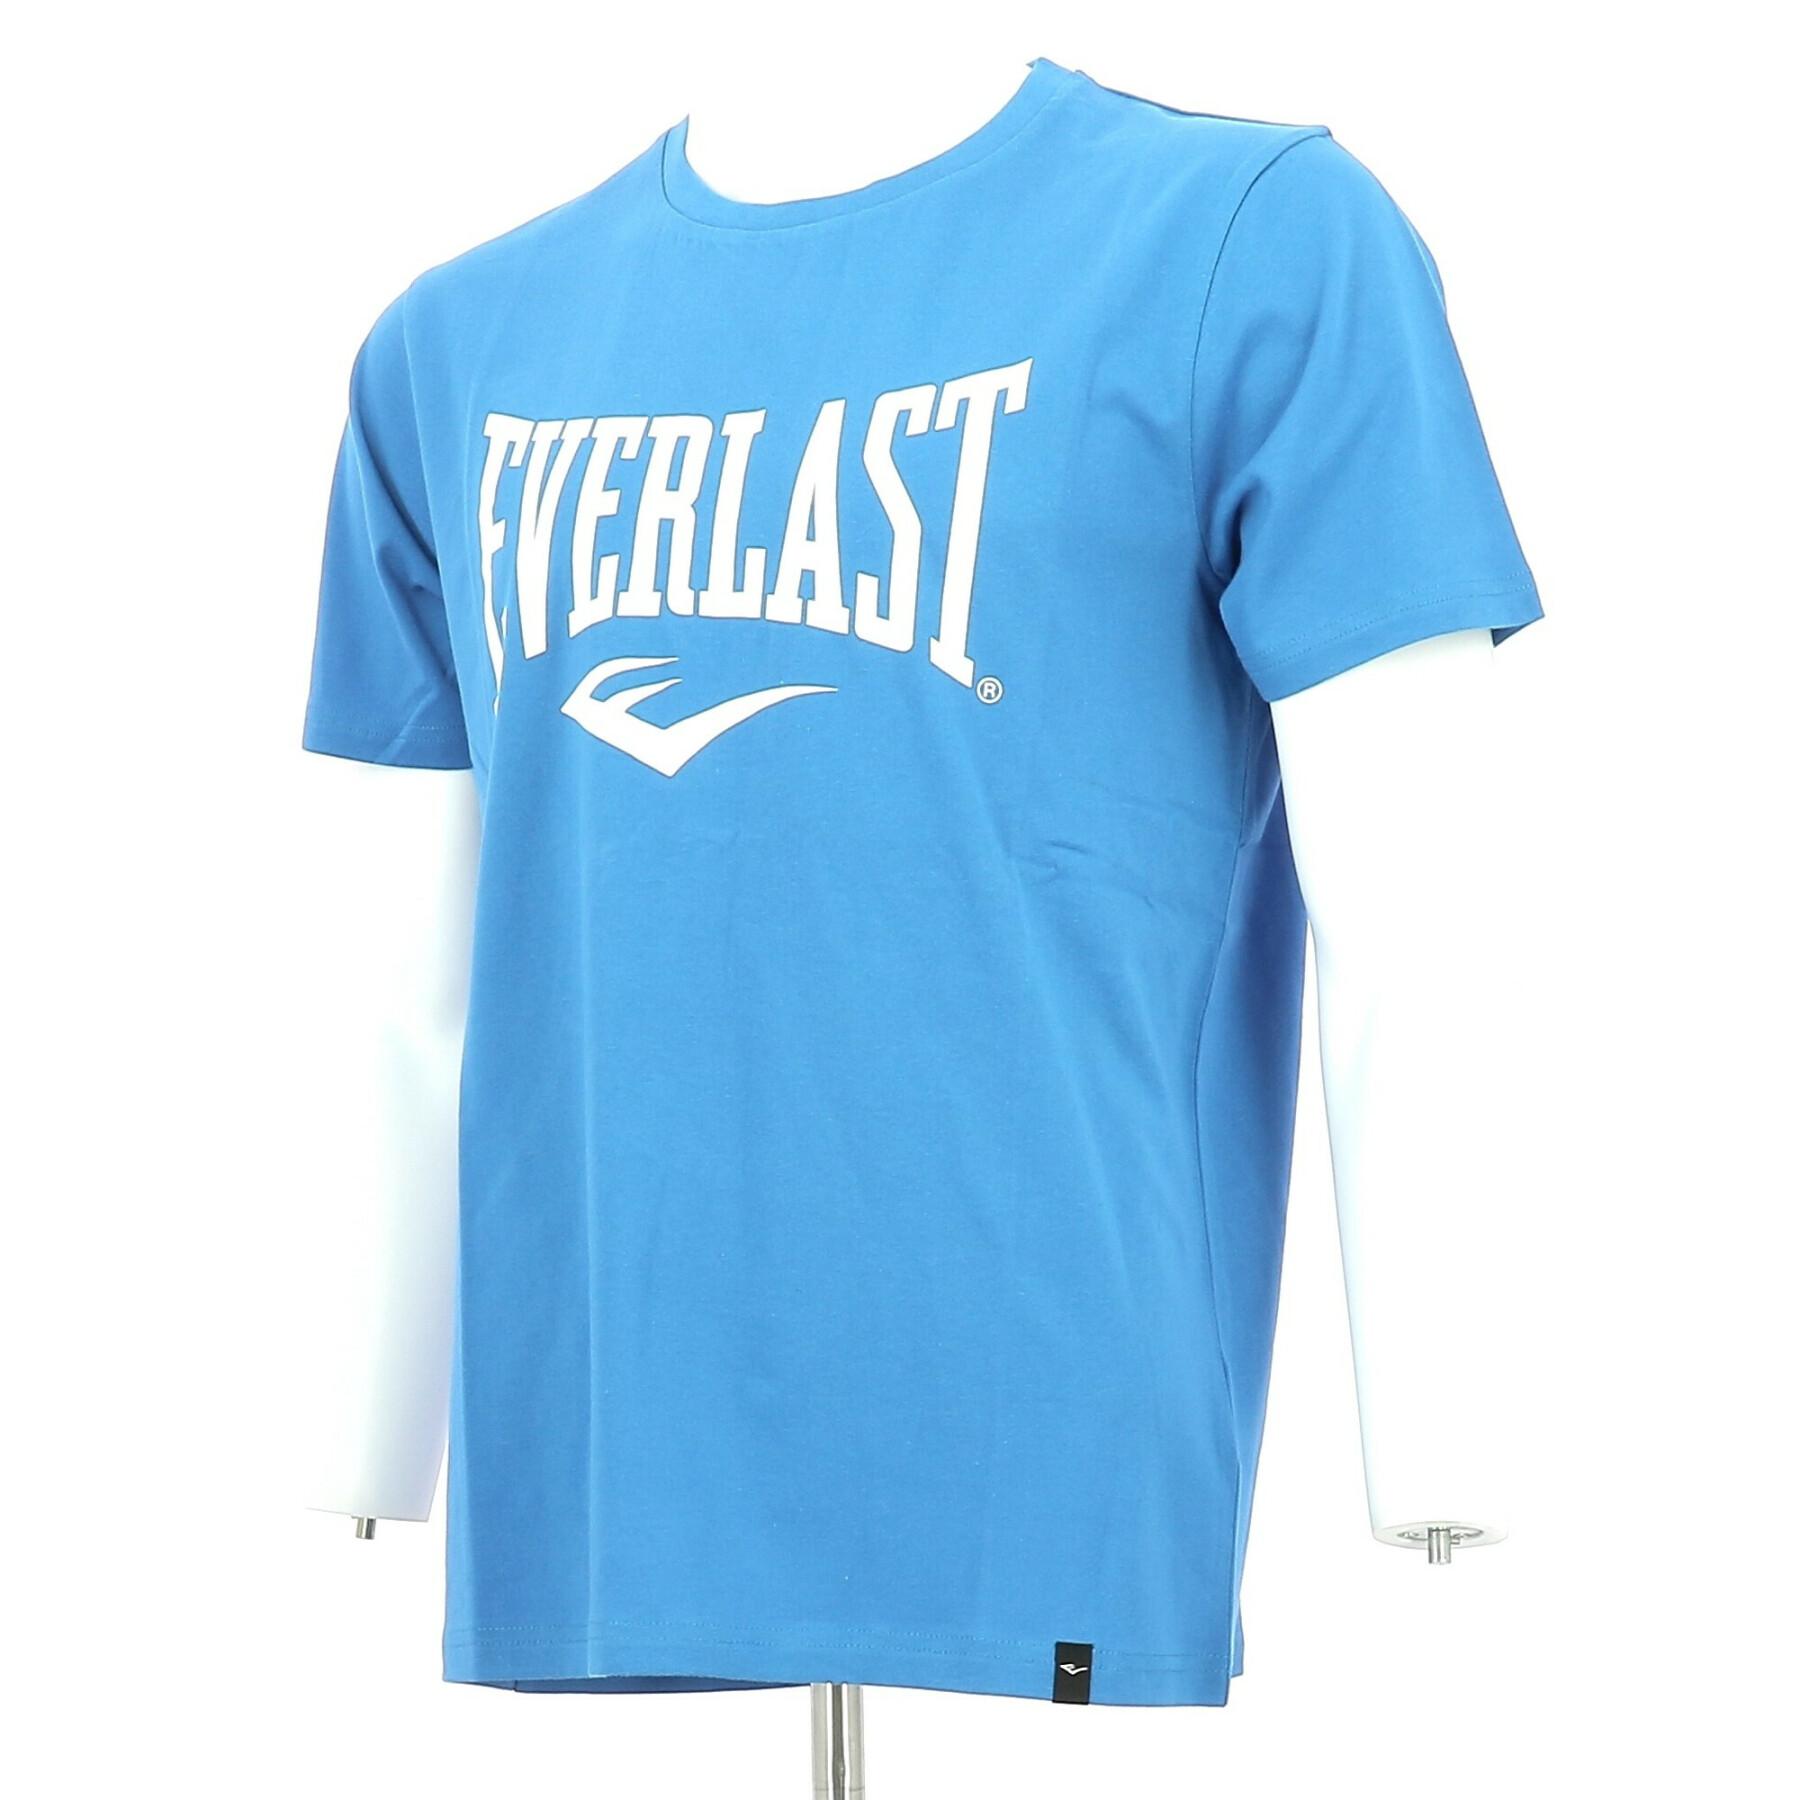 T-shirt basique Everlast Russel